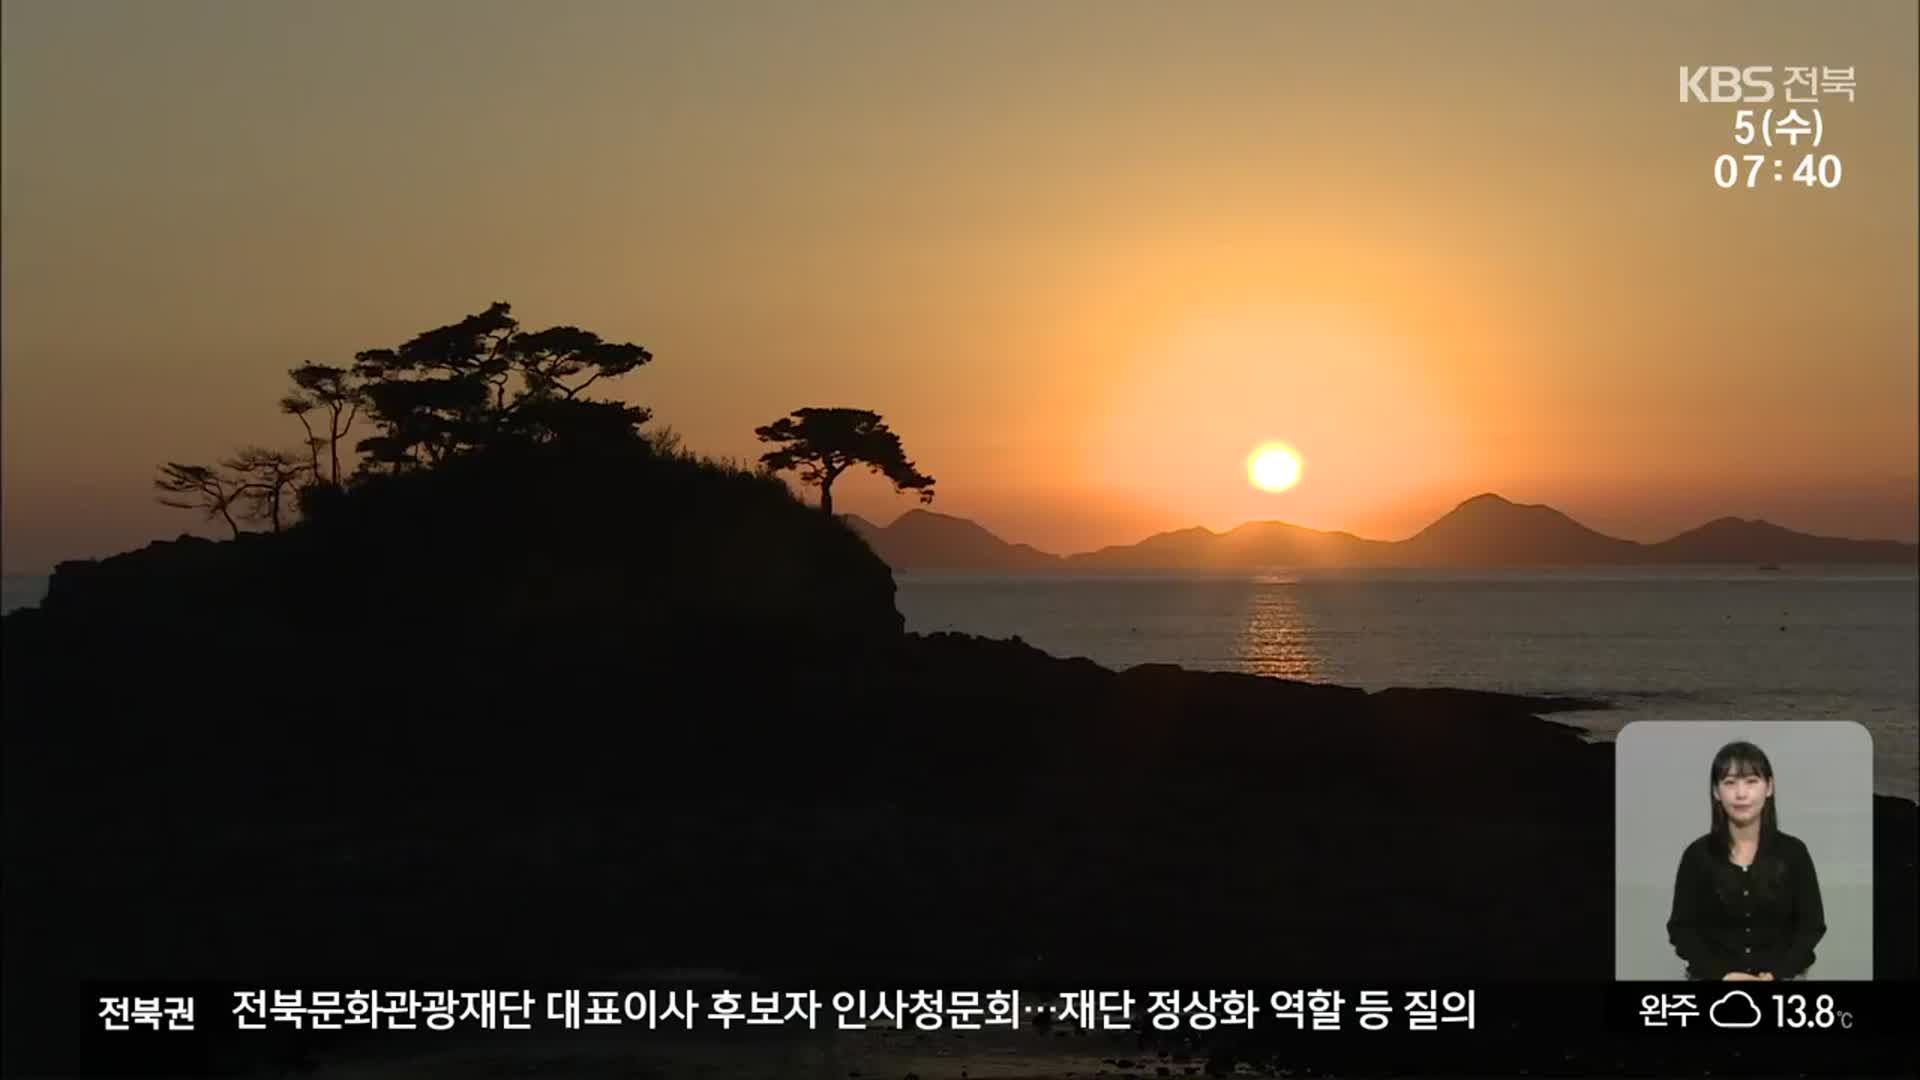 [전북의 창] “전북 서해안 세계지질공원 긍정적”